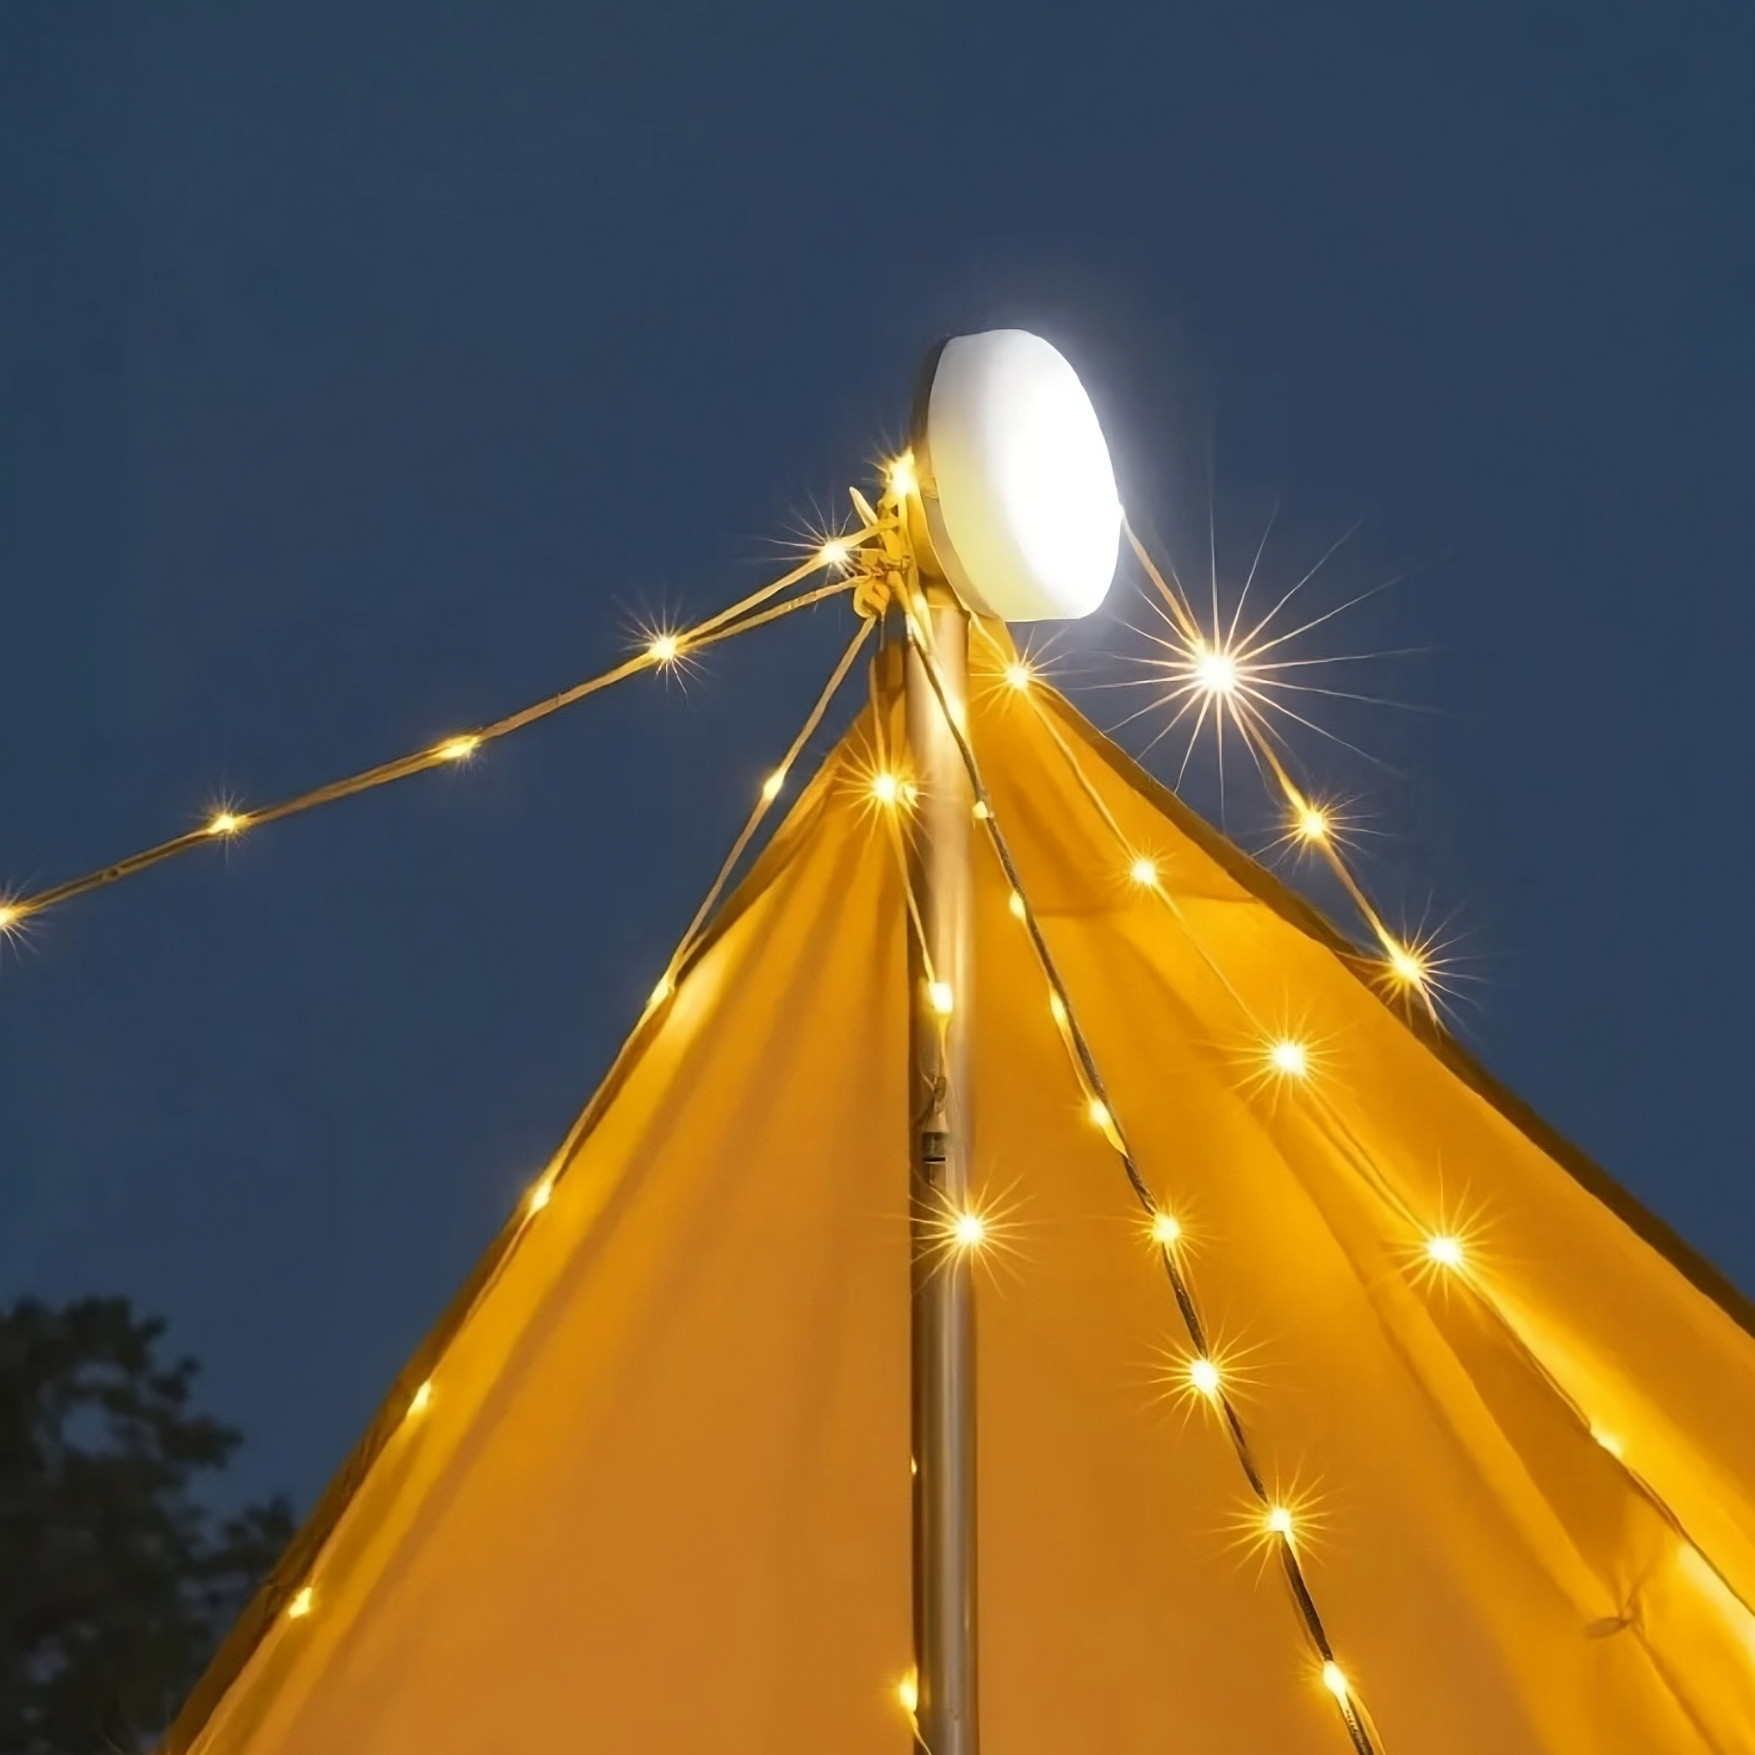 Camp Lamp